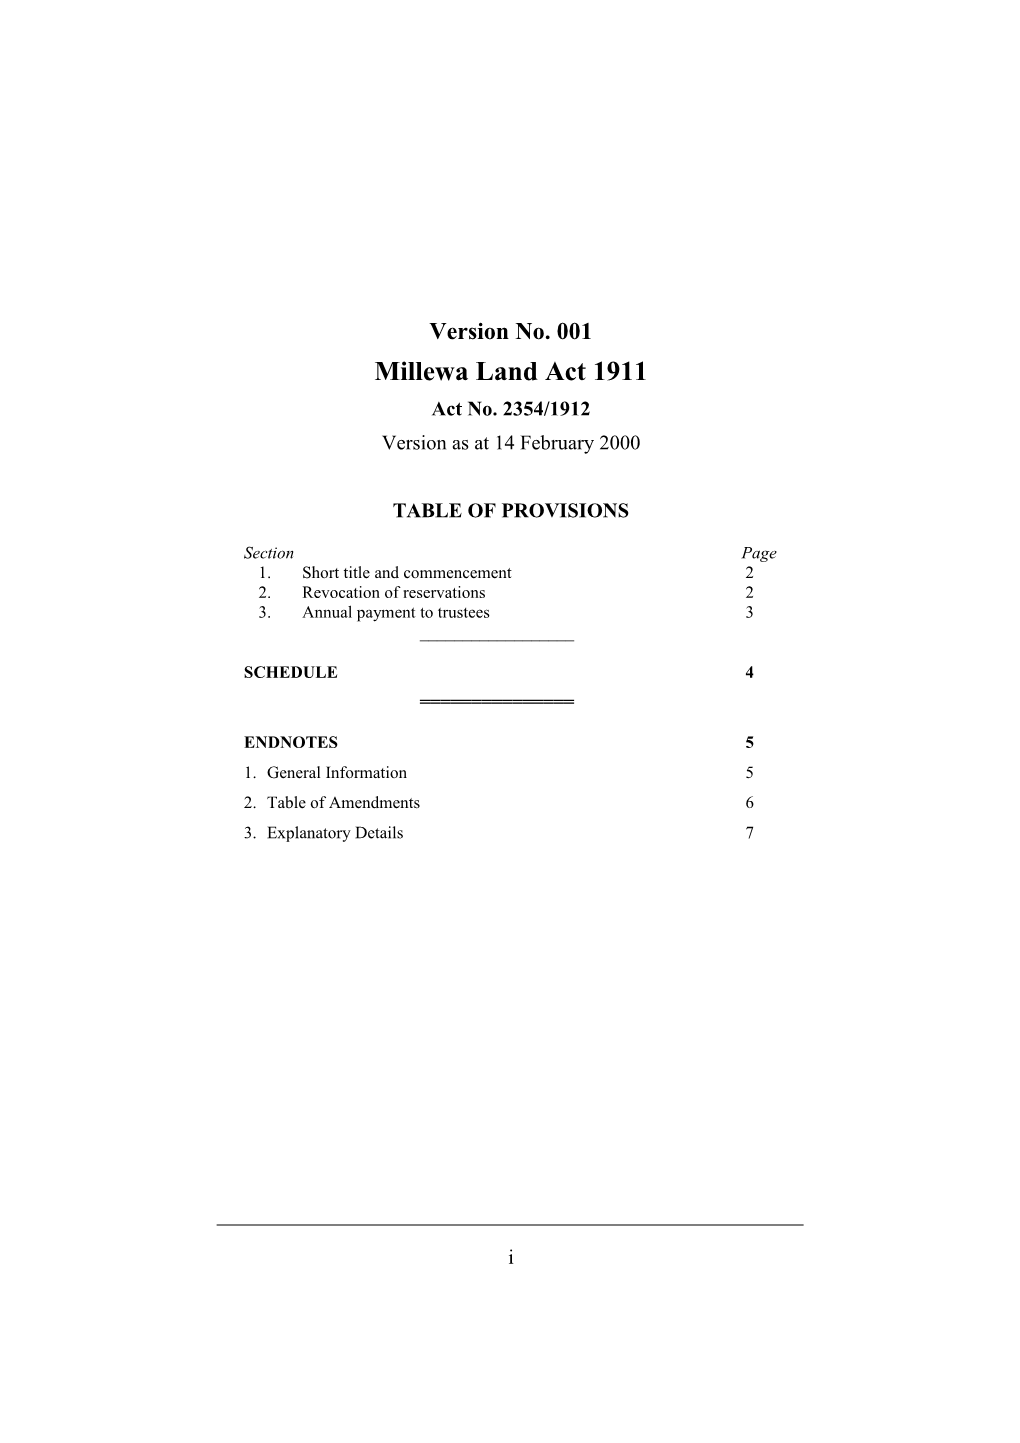 Millewa Land Act 1911